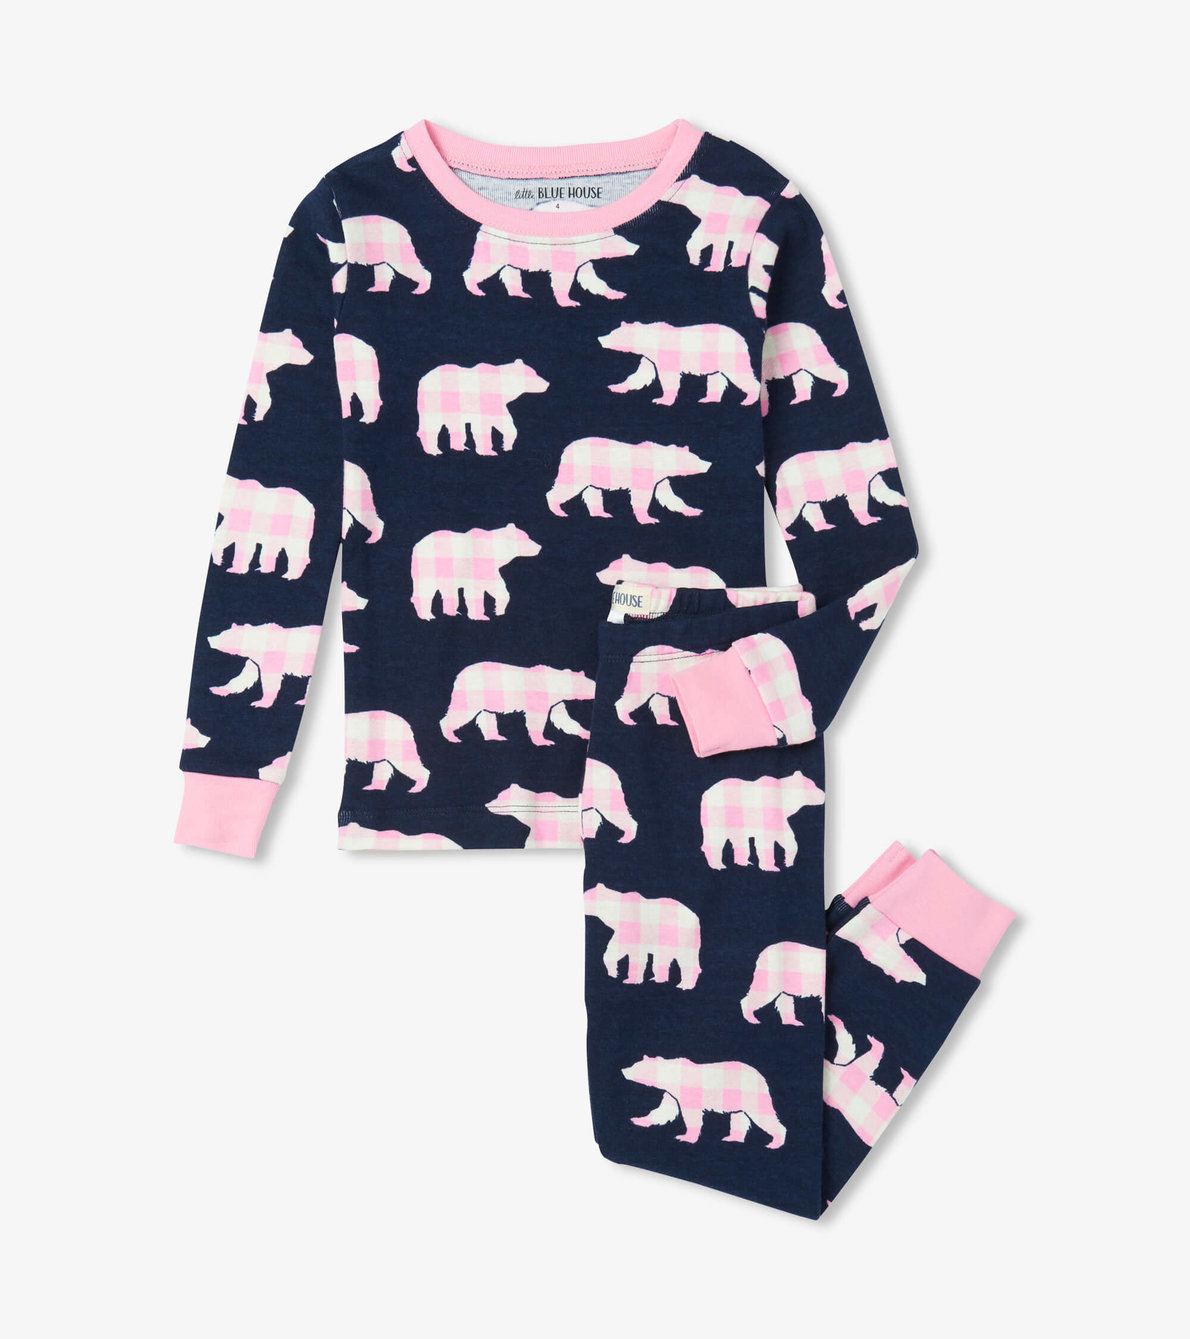 View larger image of Pink Plaid Bears Kids Pajama Set